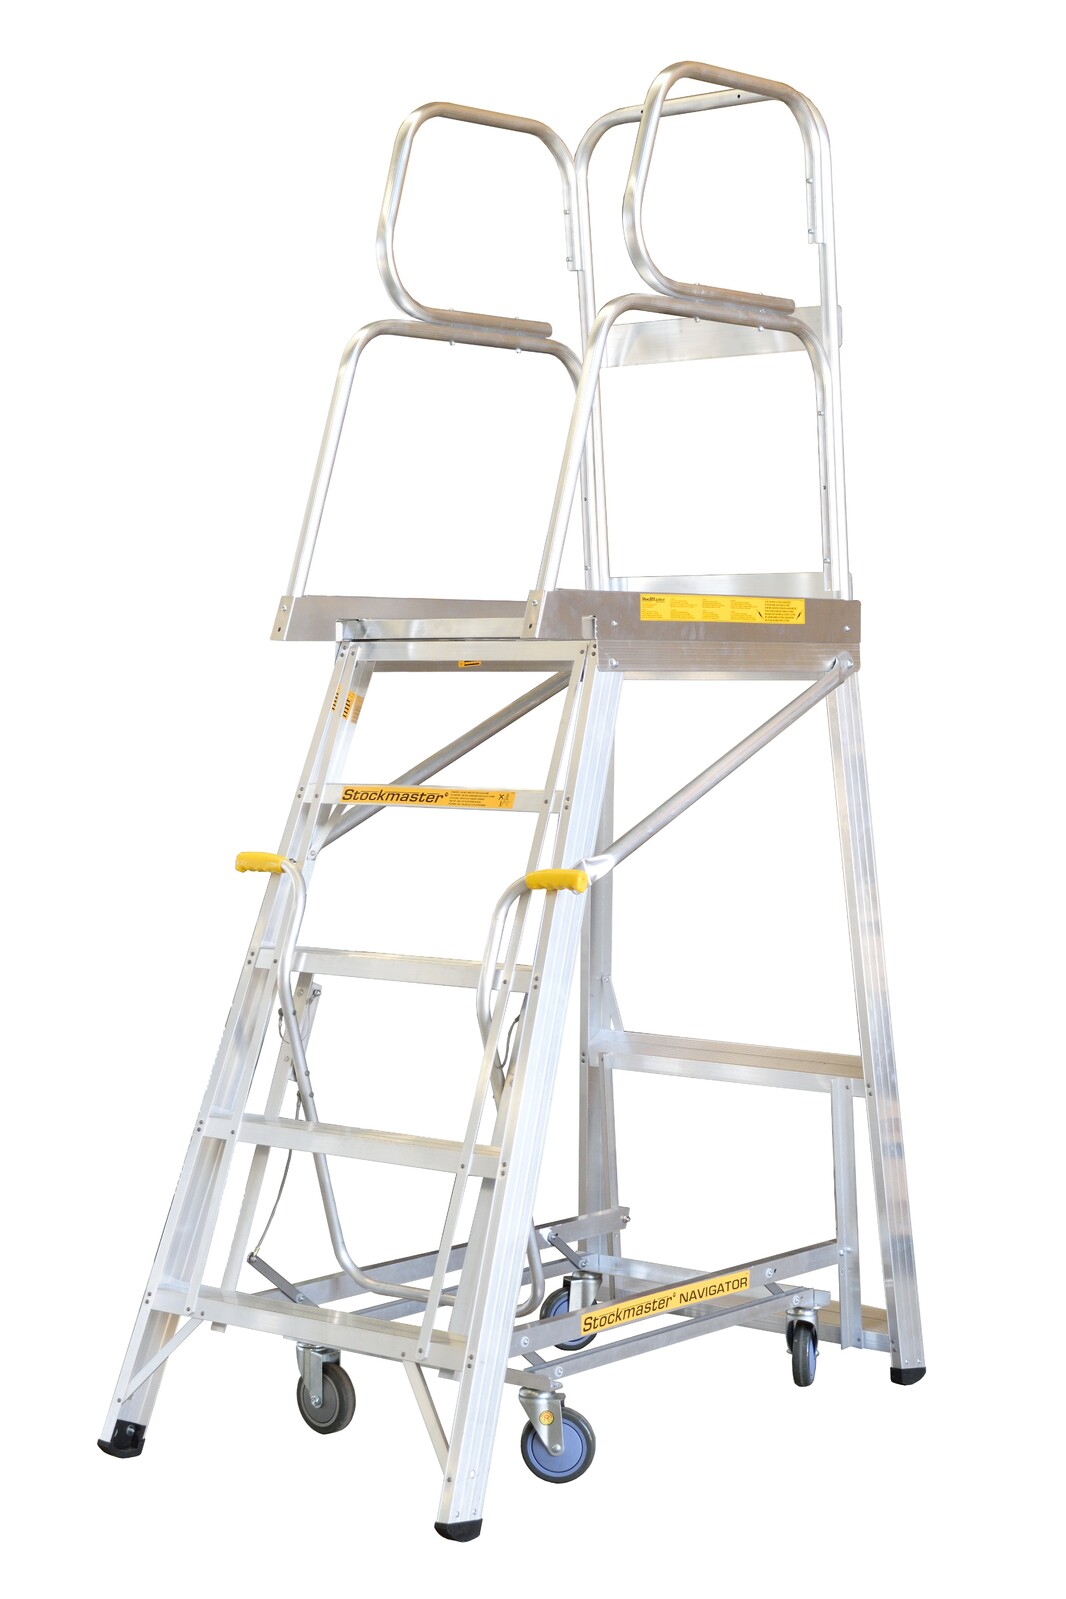 Stockmaster 150kg Rated Mobile Work Platform Ladder Navigator - 1.4m